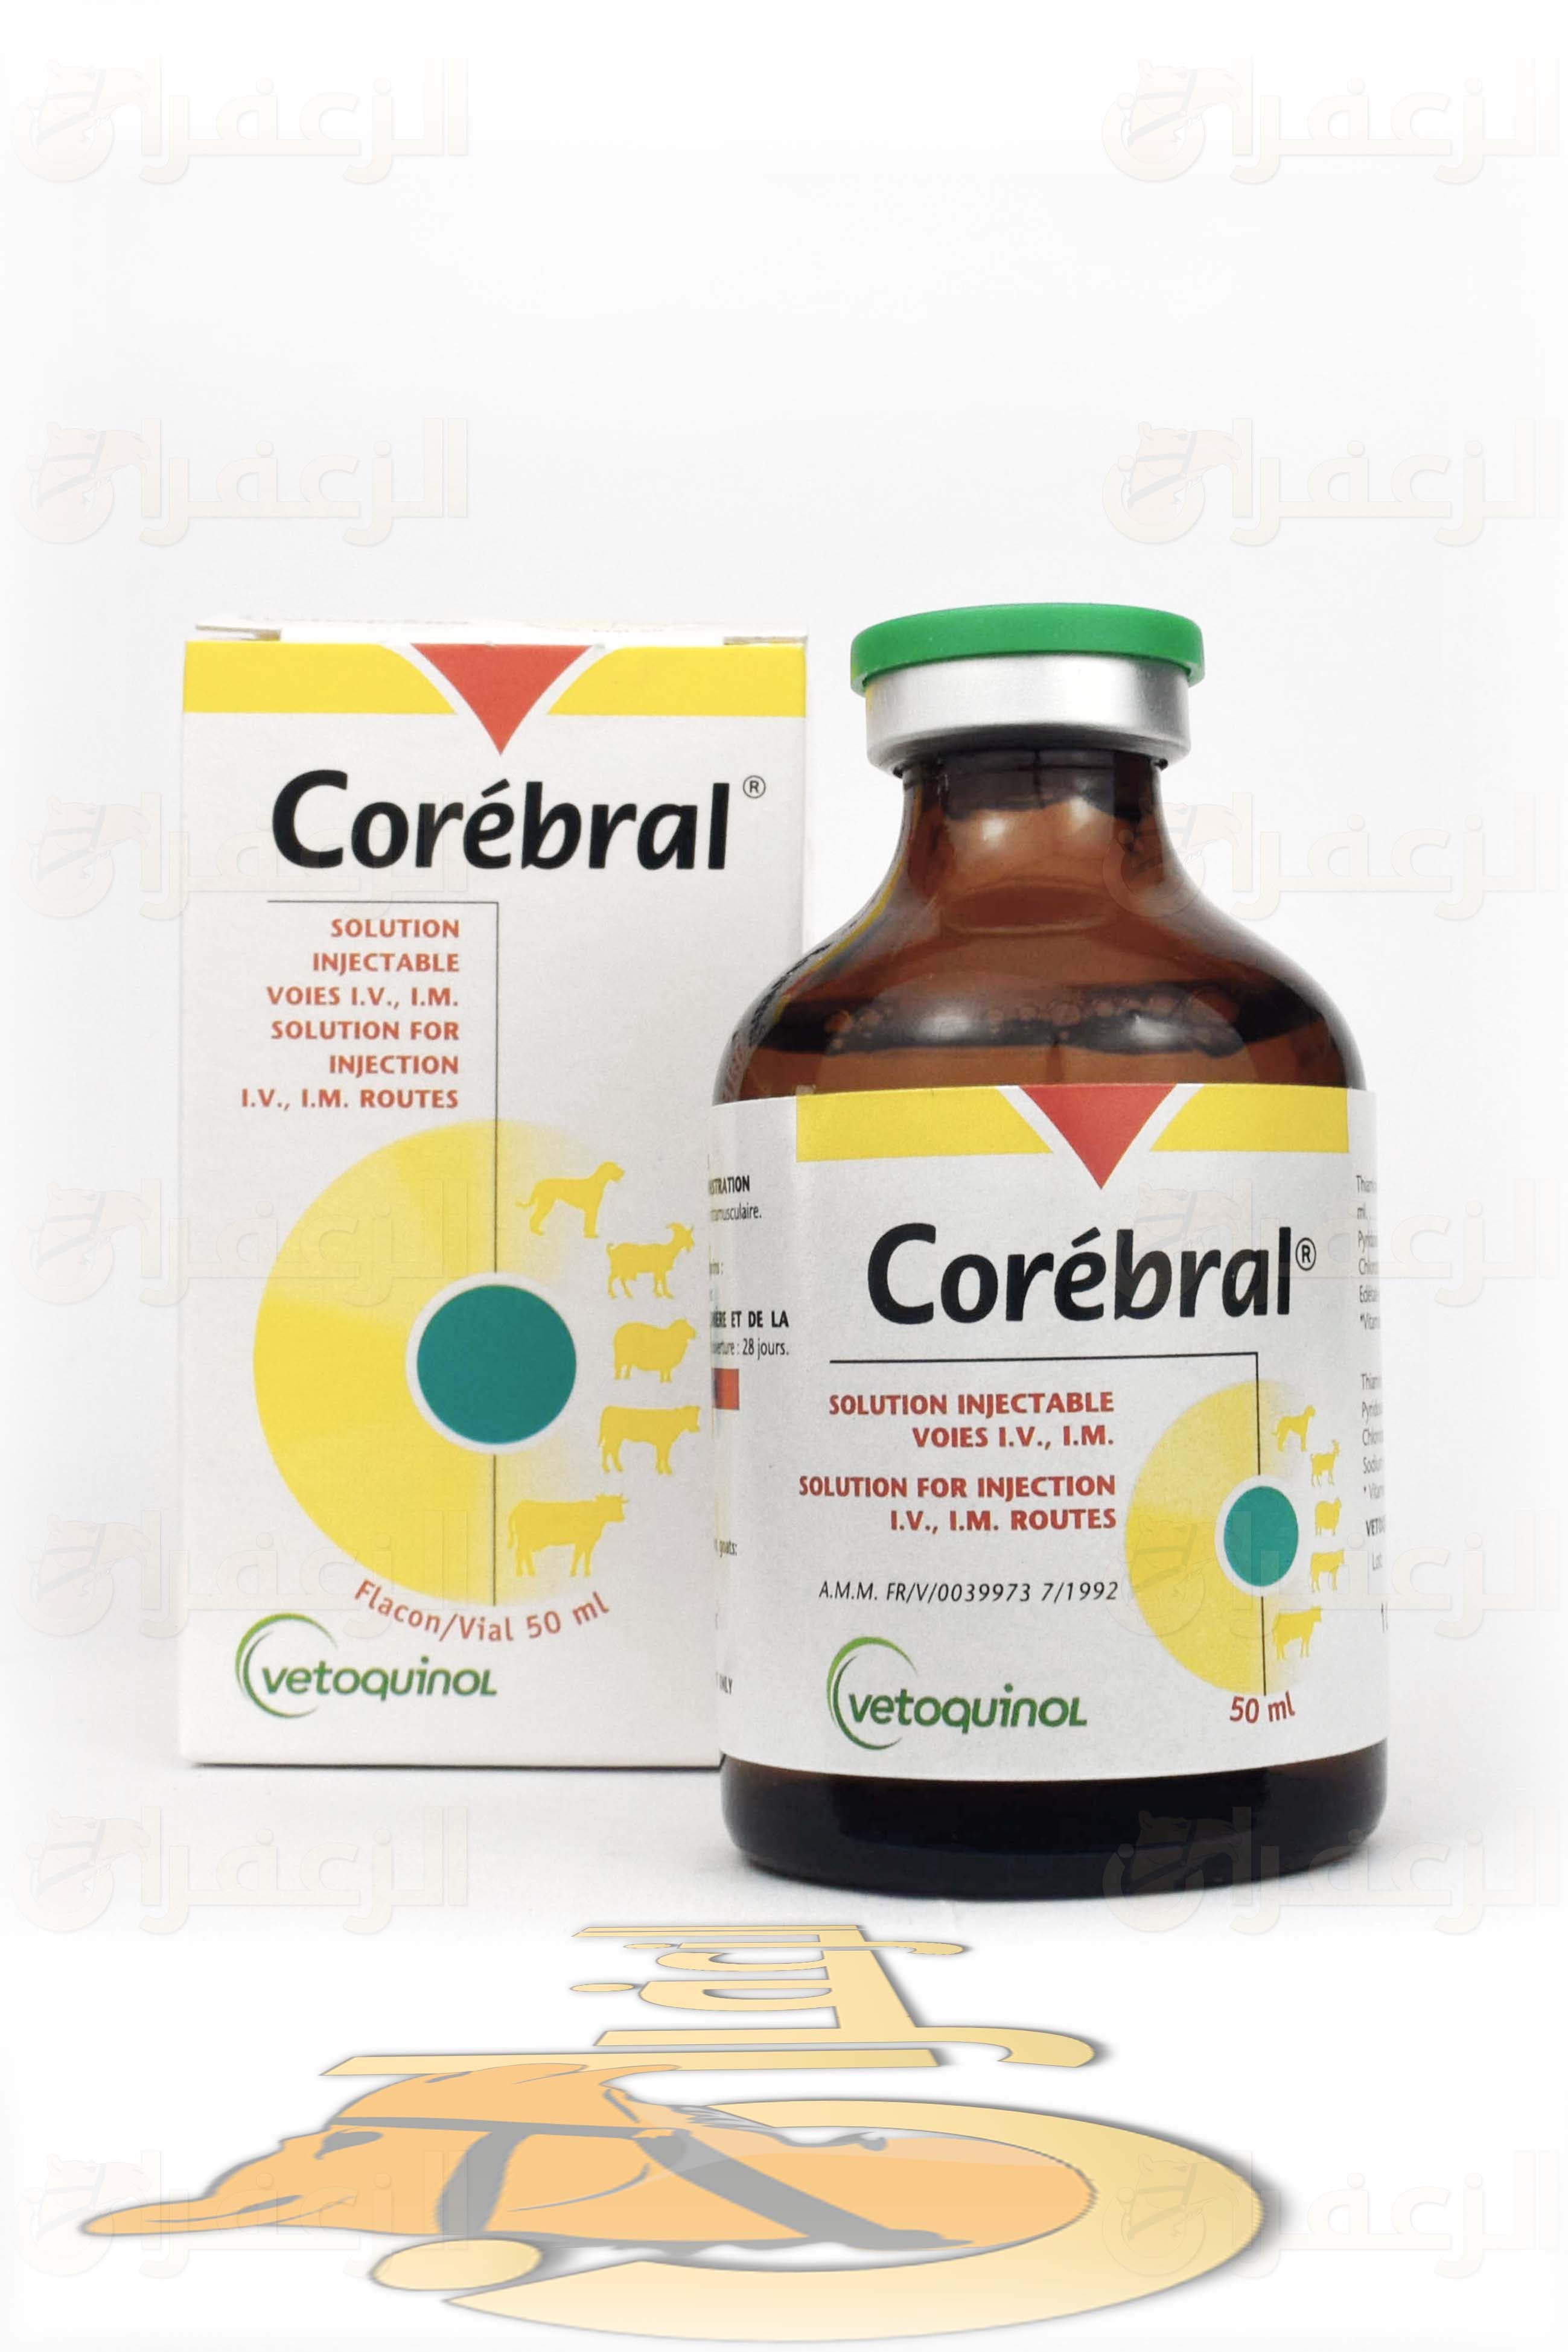 كوربرال \ COREBRAL - الزعفران